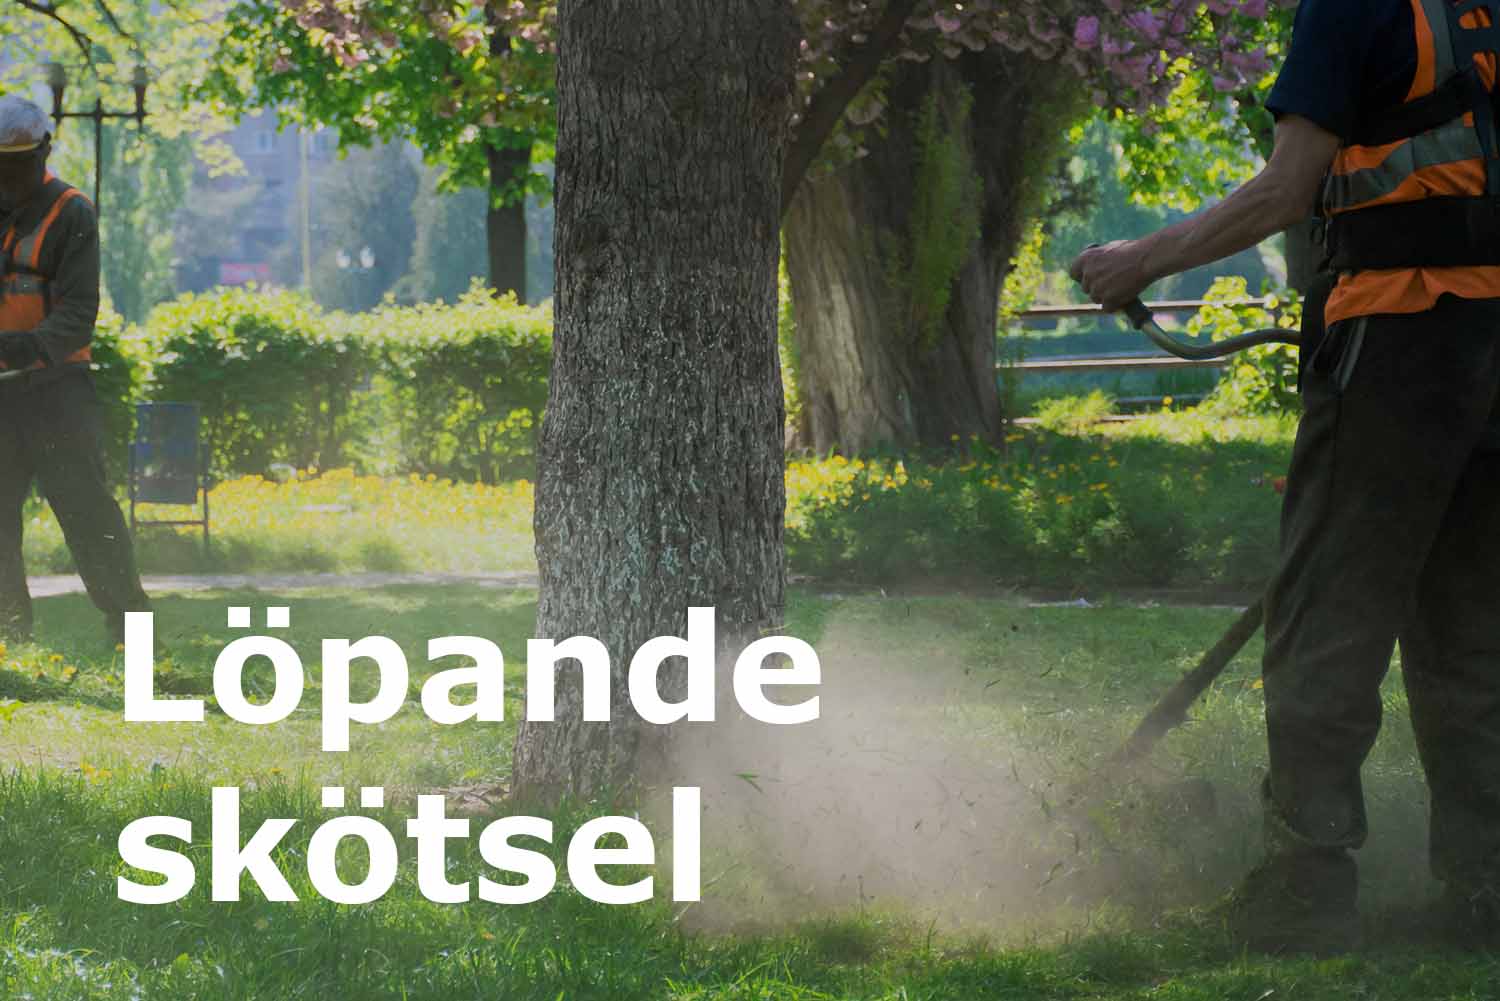 Runemyrs Alltjänst anlitas för löpande skötsel av trädgård och parkmiljöer